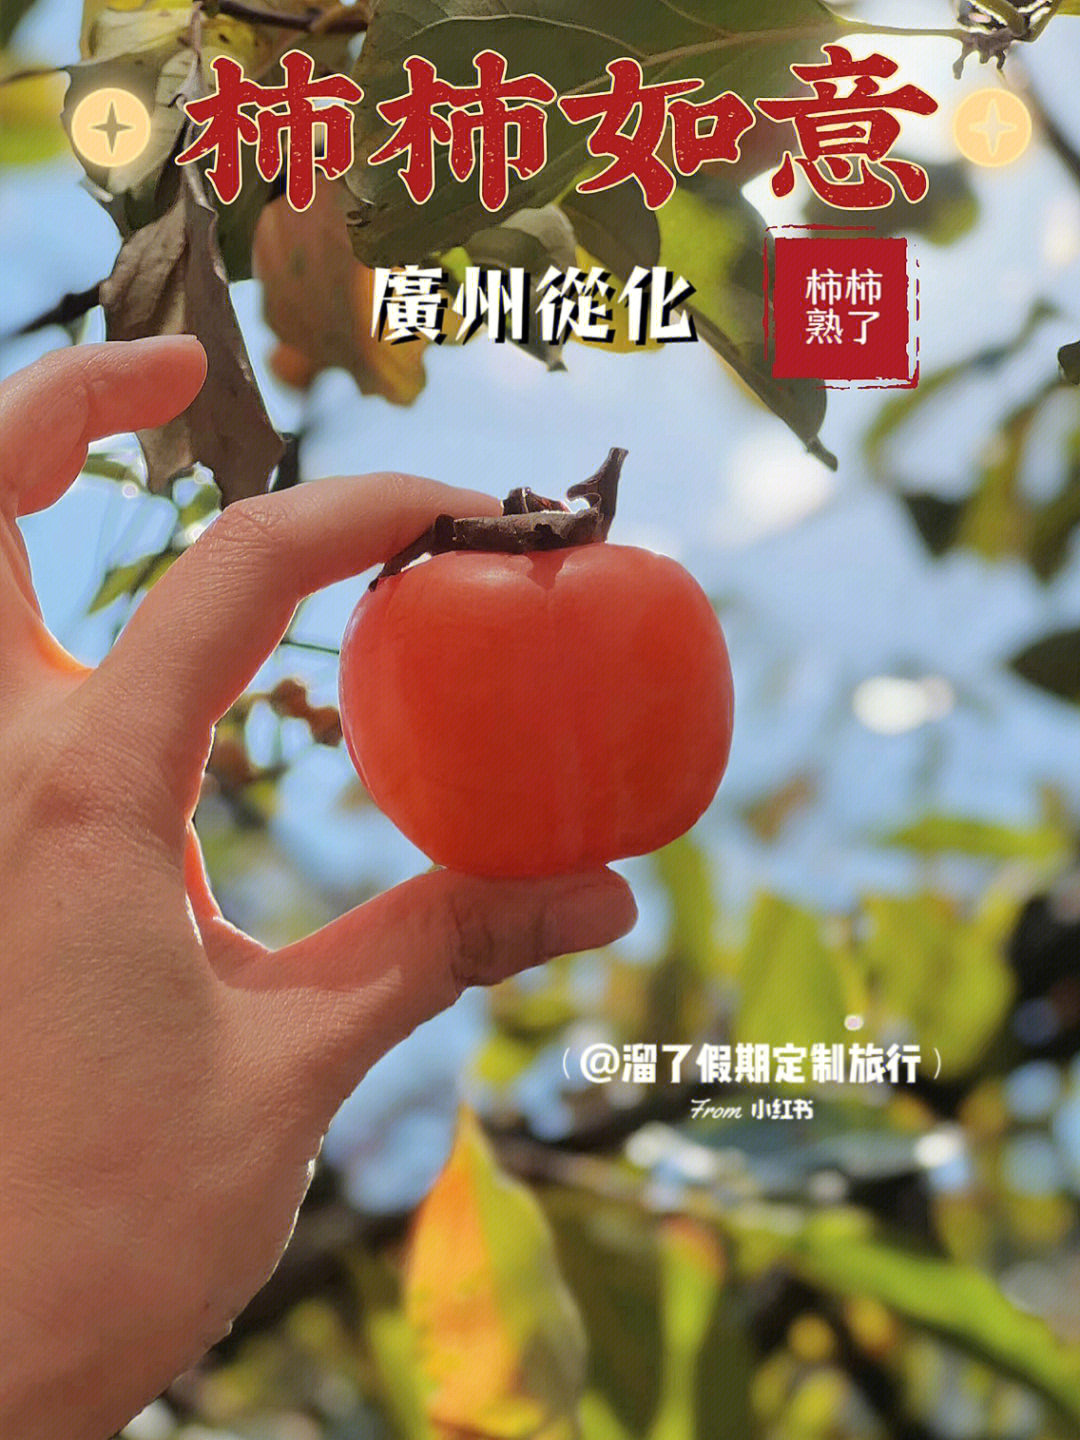 柿子熟了75快来广州从化摘柿子泡温泉76